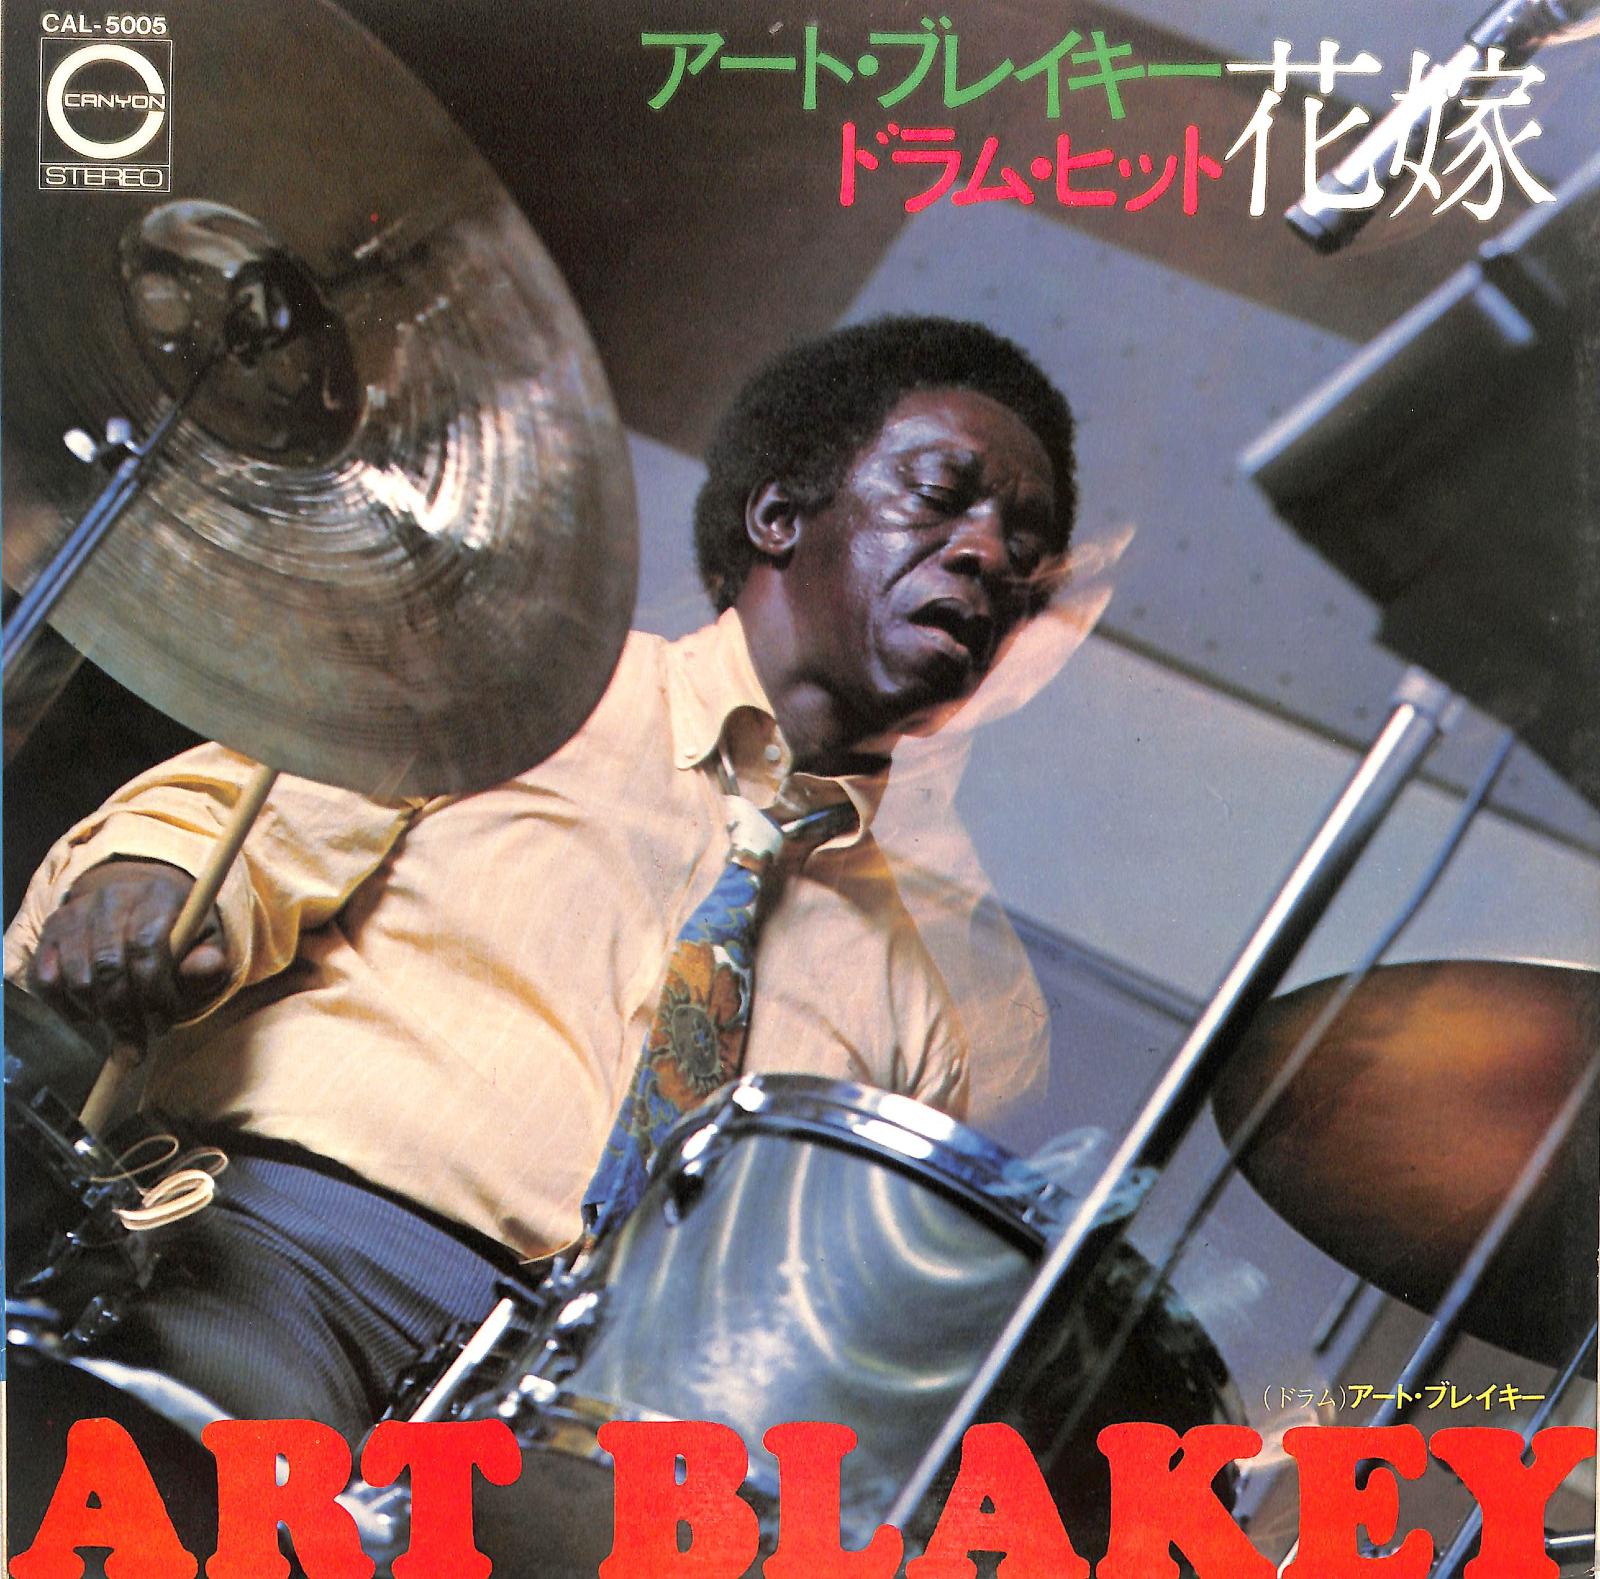 ART BLAKEY - Drum Hit Hanayome